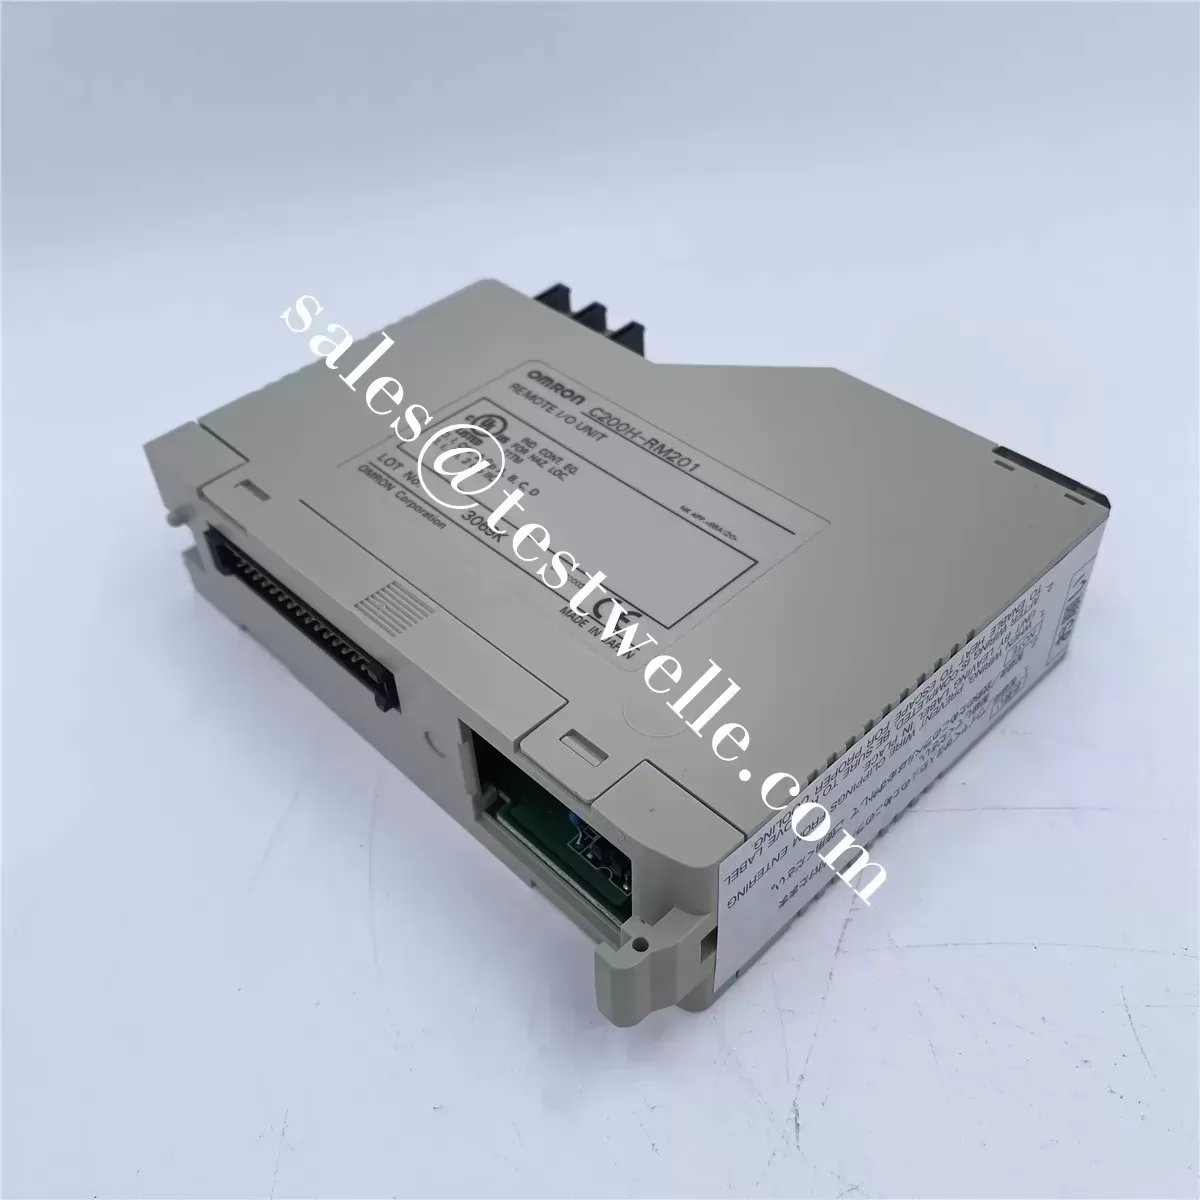 OMRON cheap PLC controller C200HX-CPU44E